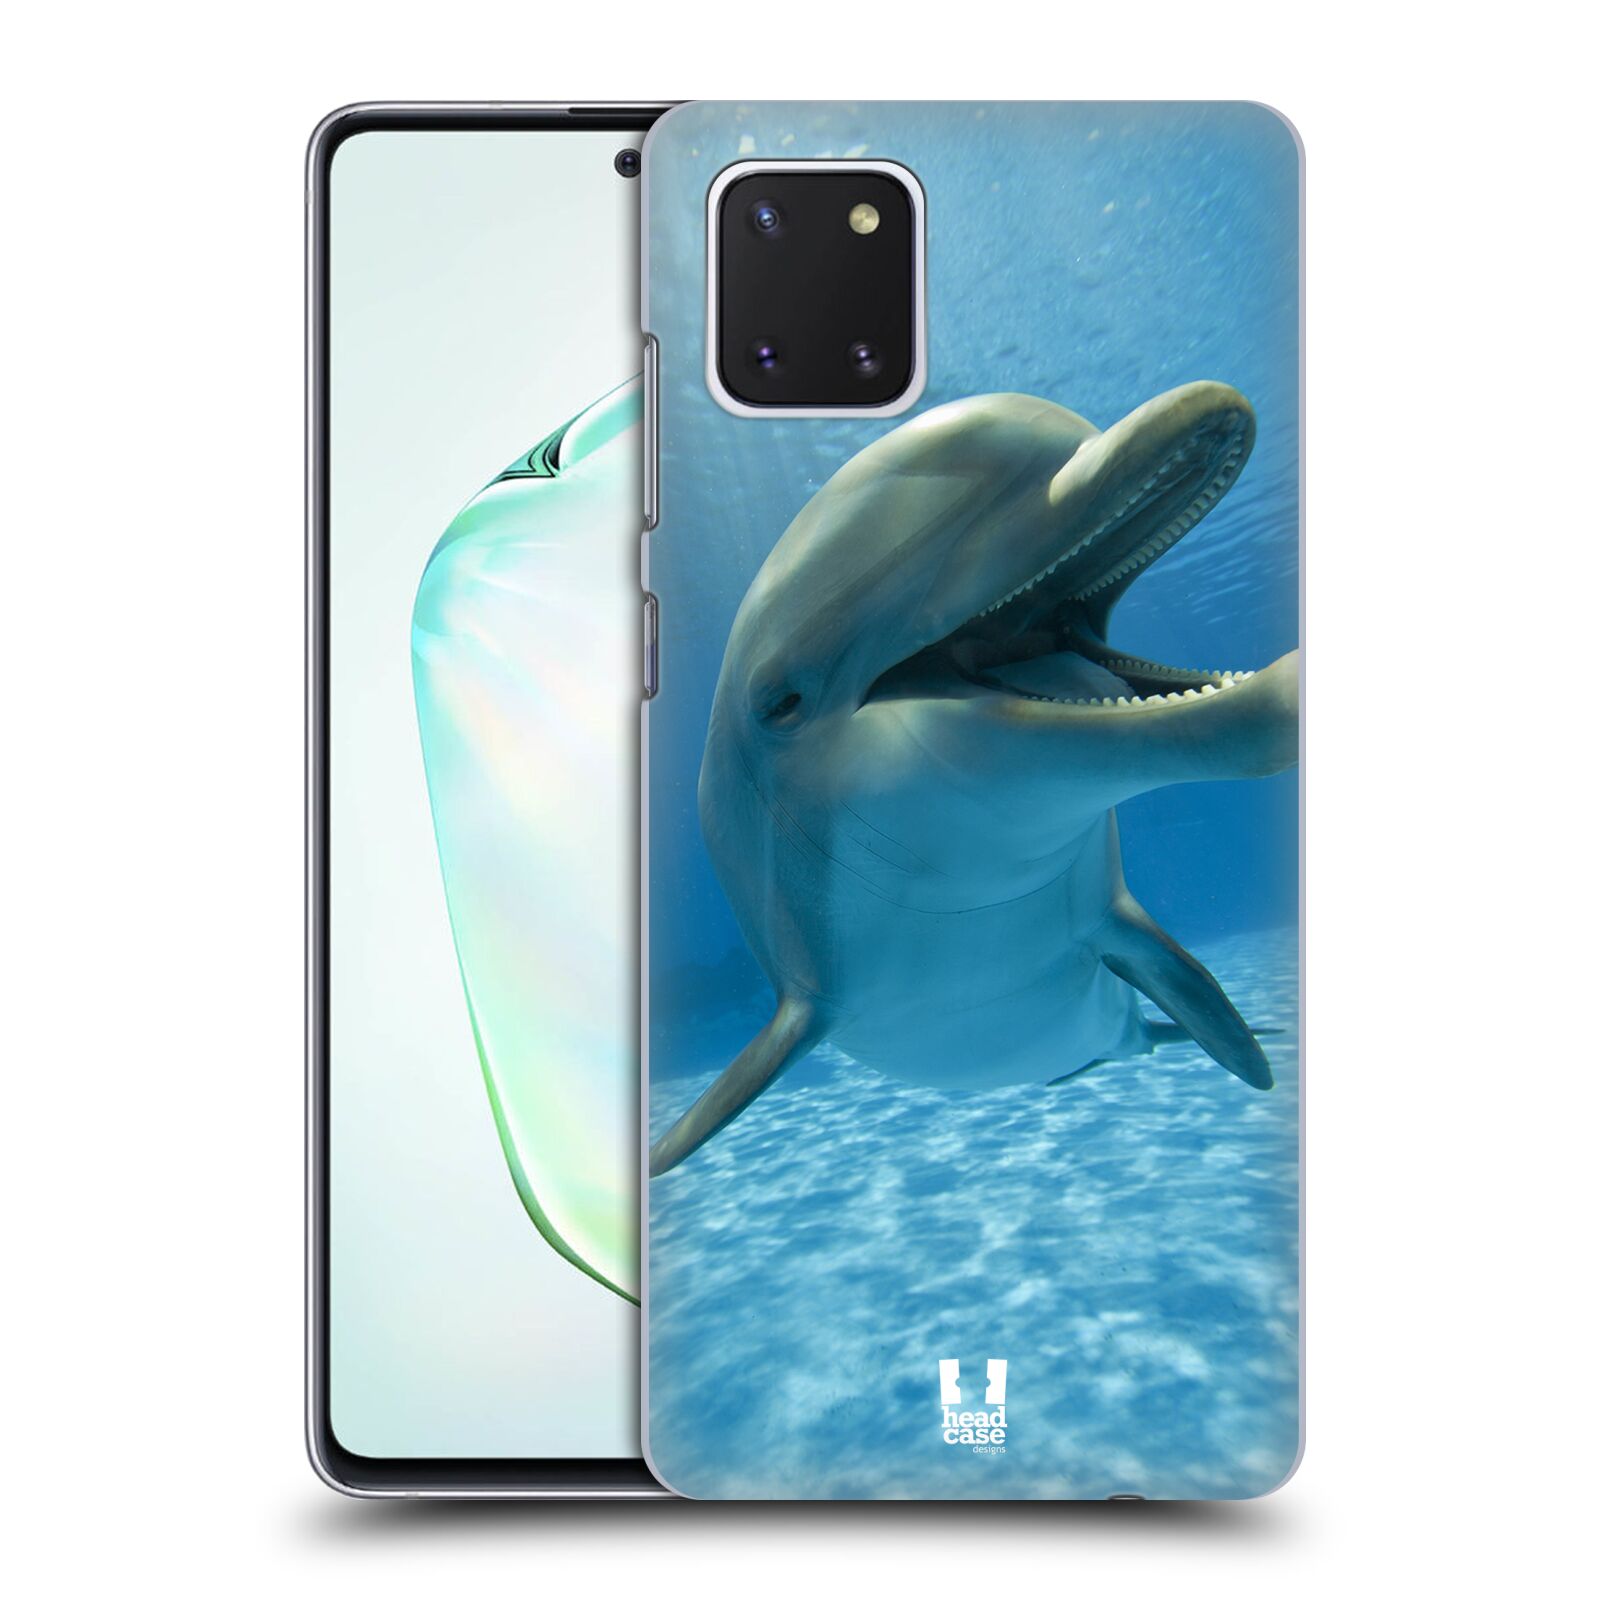 Zadní obal pro mobil Samsung Galaxy Note 10 Lite - HEAD CASE - Svět zvířat delfín v moři